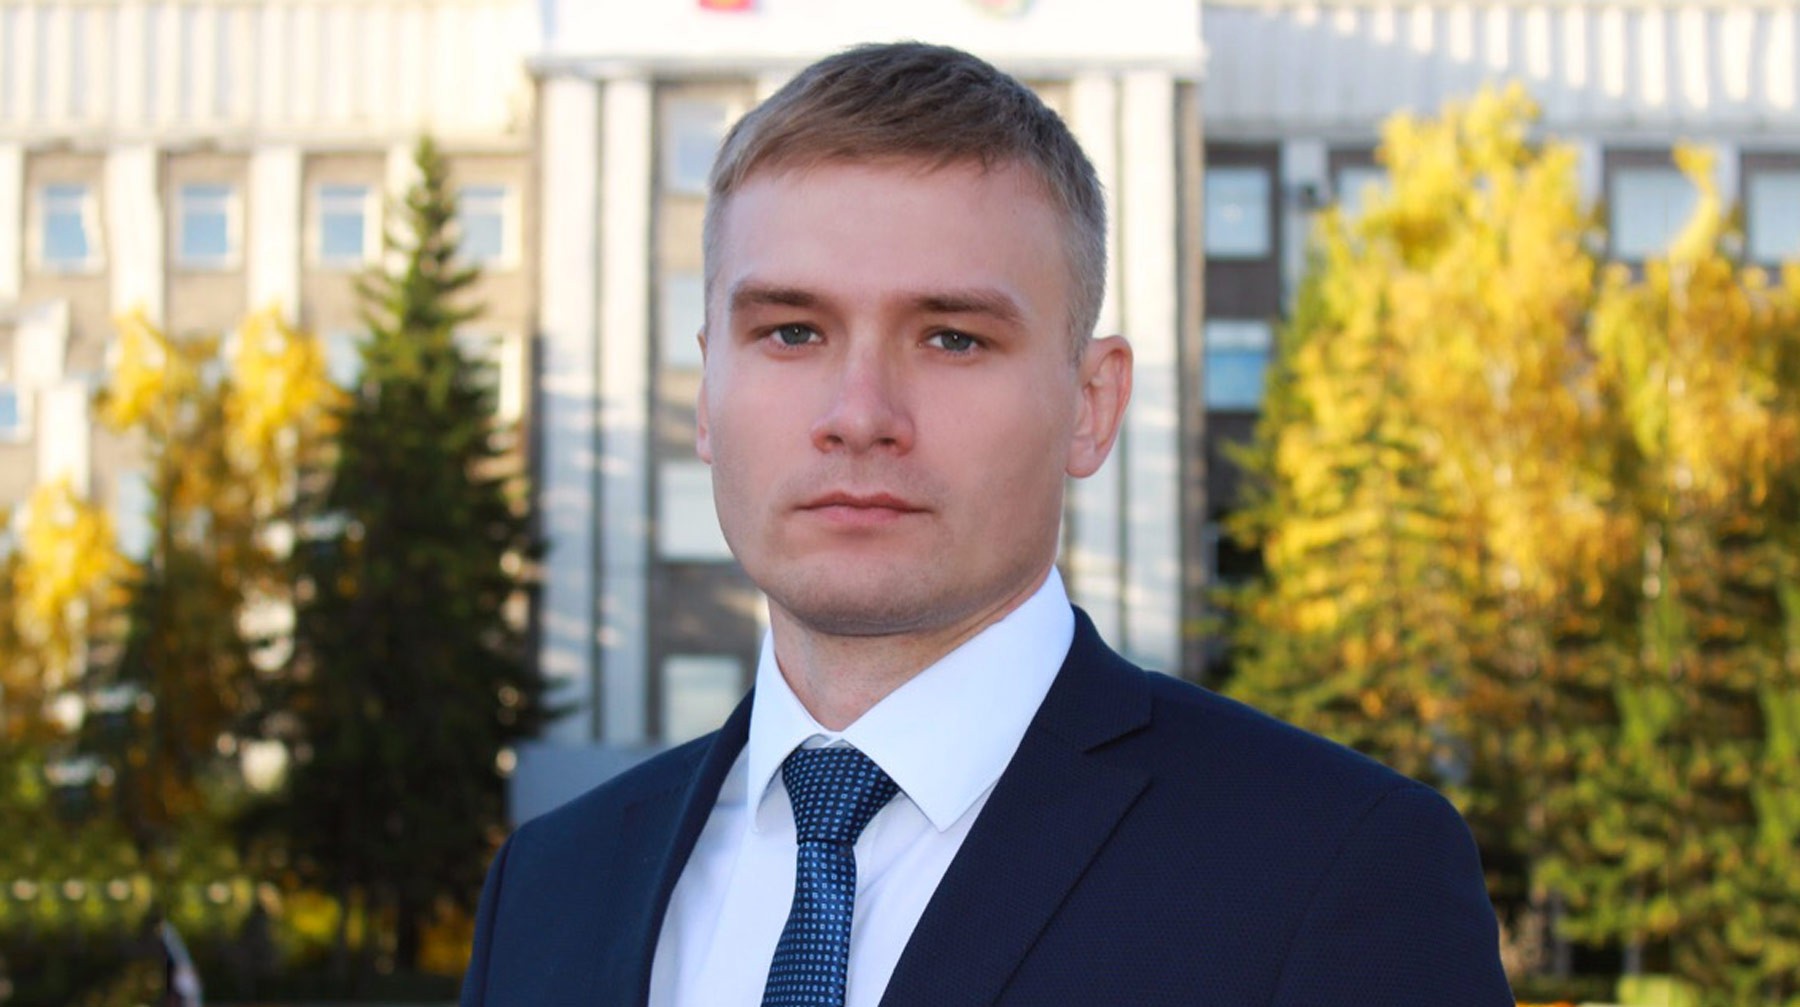 Dailystorm - Валентин Коновалов: Если меня снимут с выборов — это будет откровенный правовой беспредел